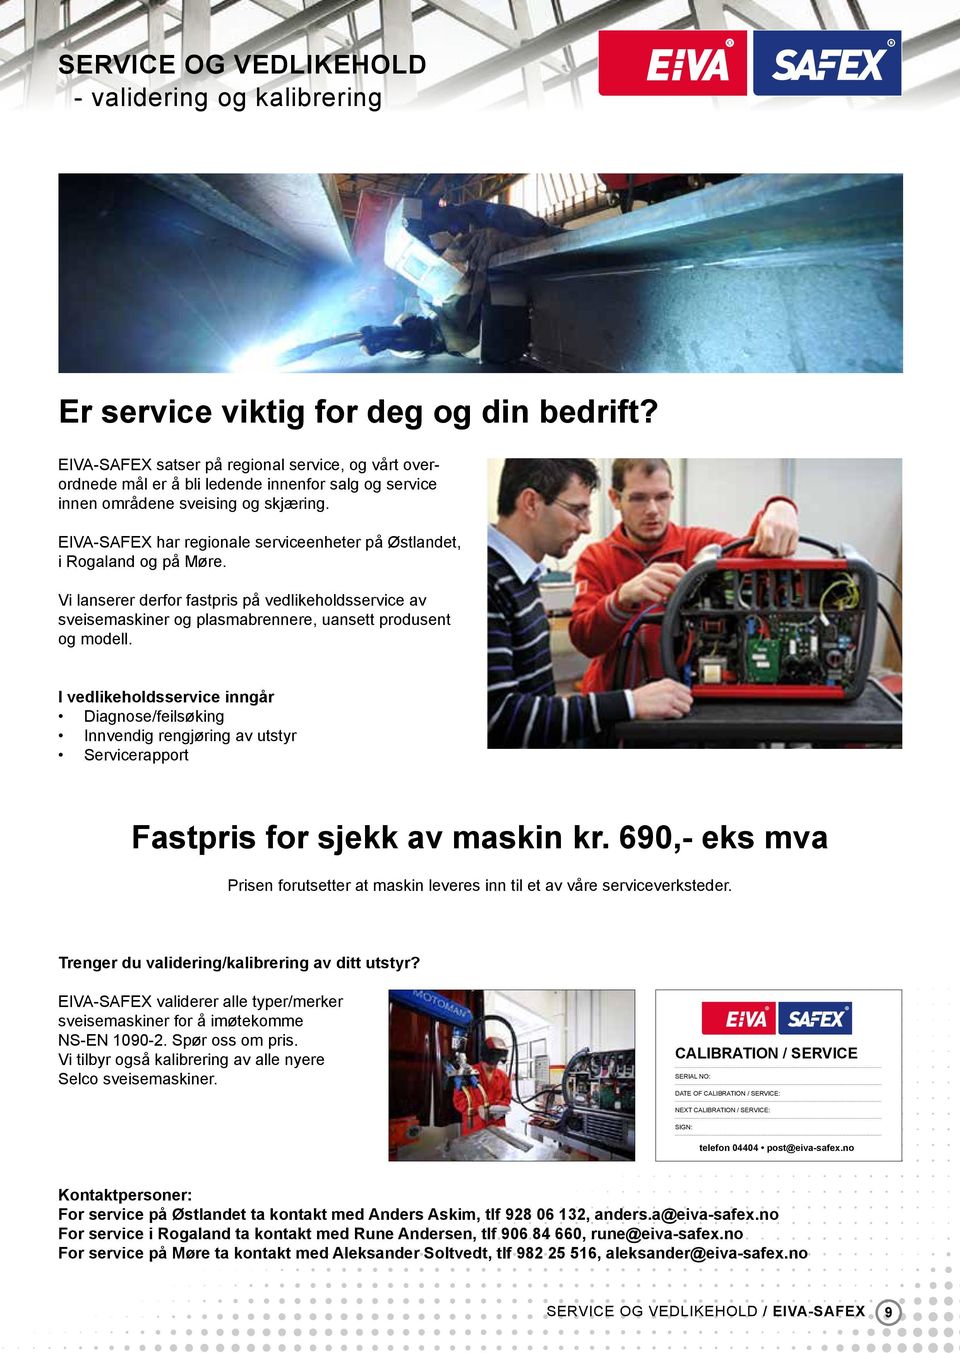 EIVA-SAFEX har regionale serviceenheter på Østlandet, i Rogaland og på Møre. Vi lanserer derfor fastpris på vedlikeholdsservice av sveisemaskiner og plasmabrennere, uansett produsent og modell.